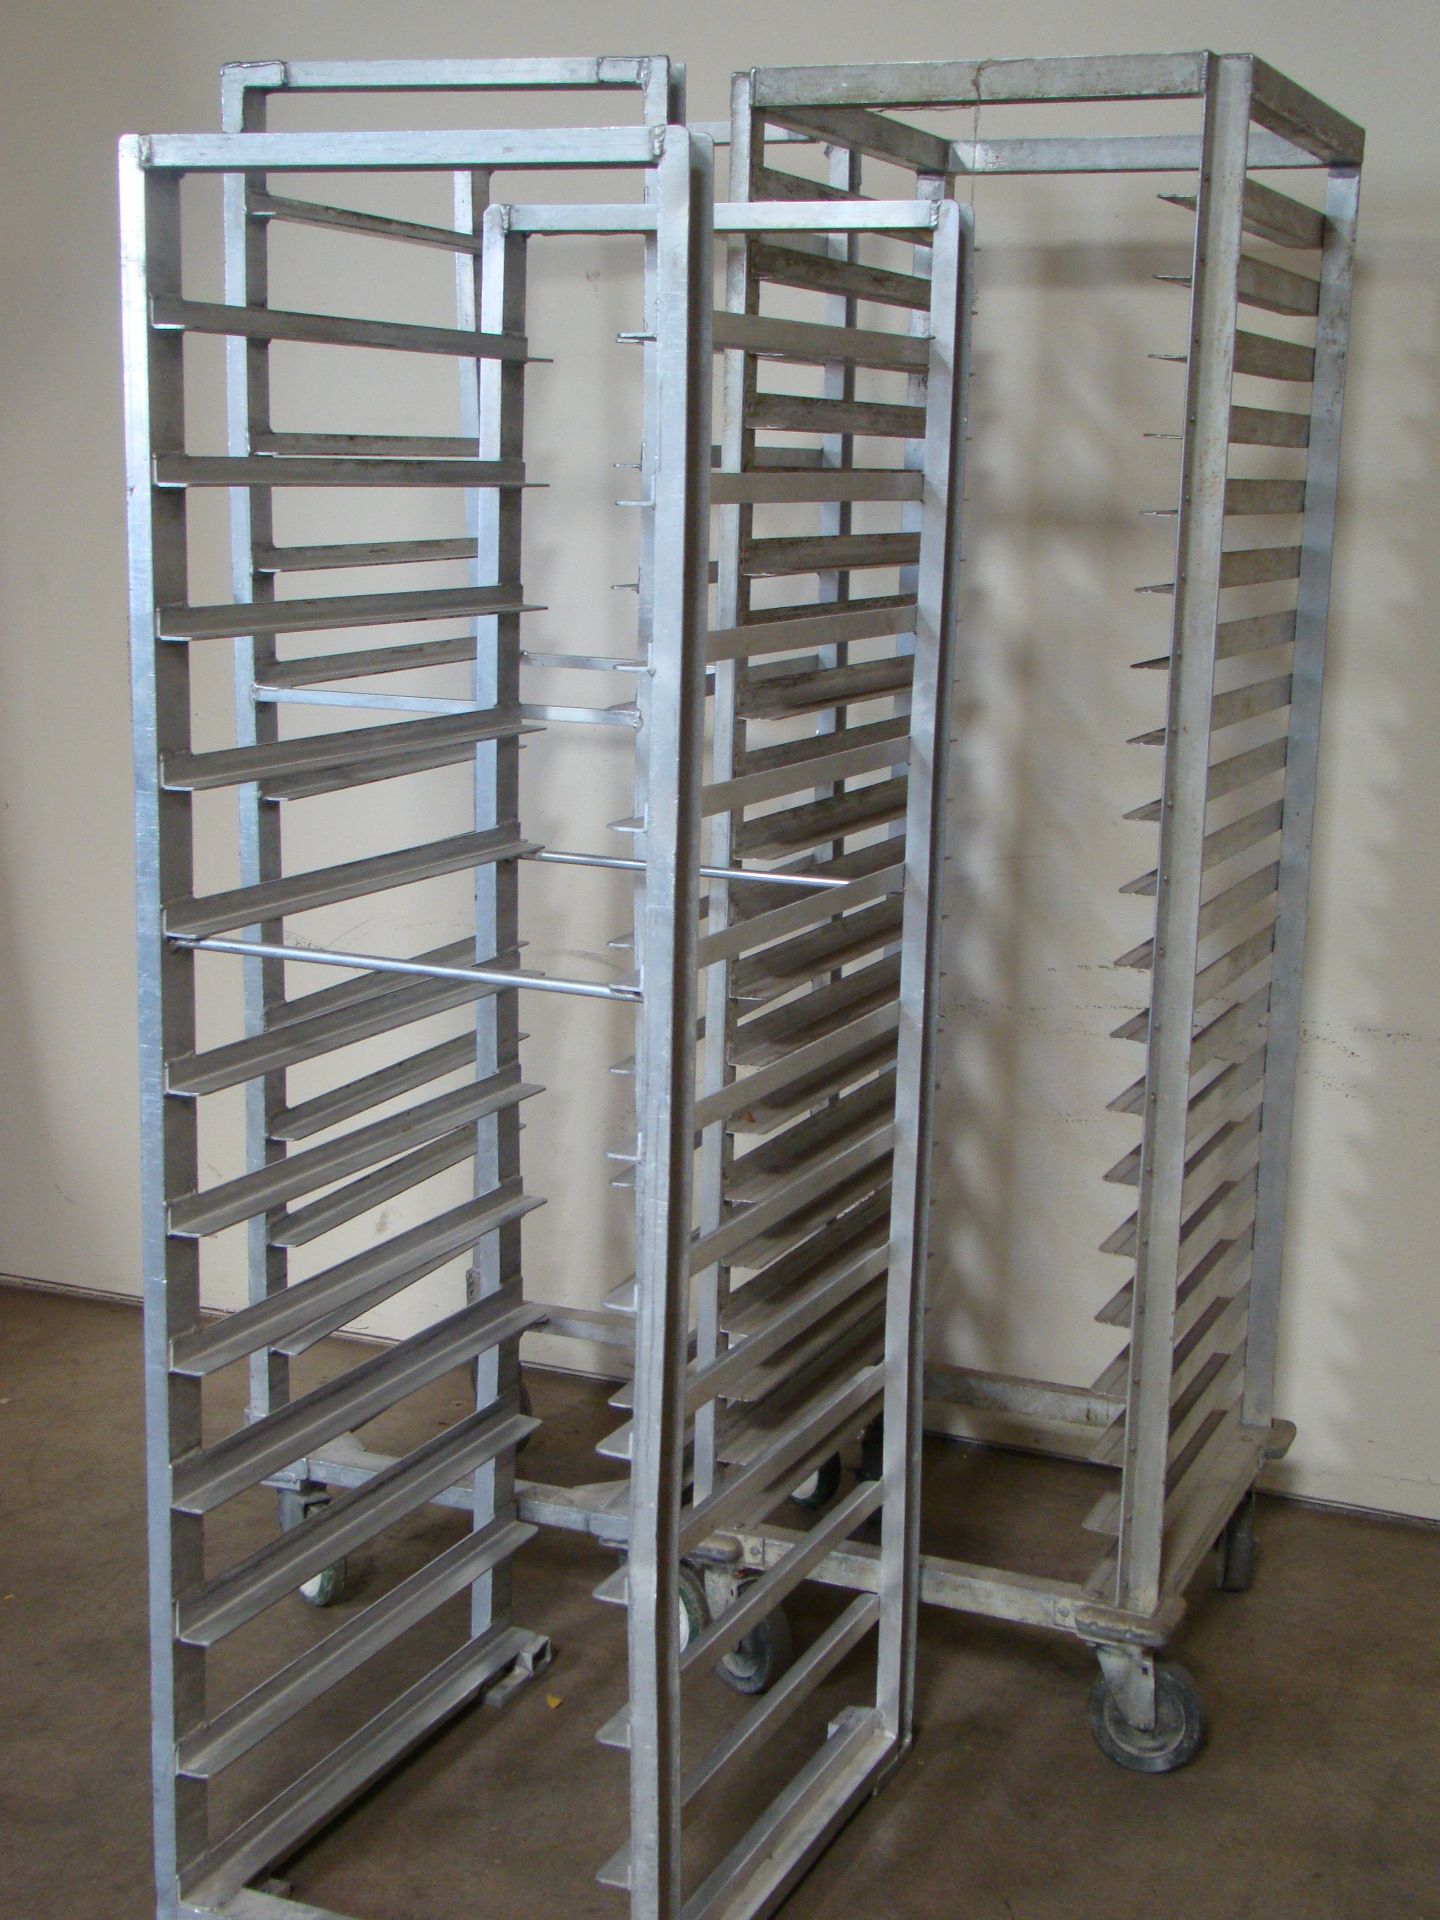 3 - Heavy Duty Aluminum Bakers Racks (2-20 shelves, 1-12 shelf)